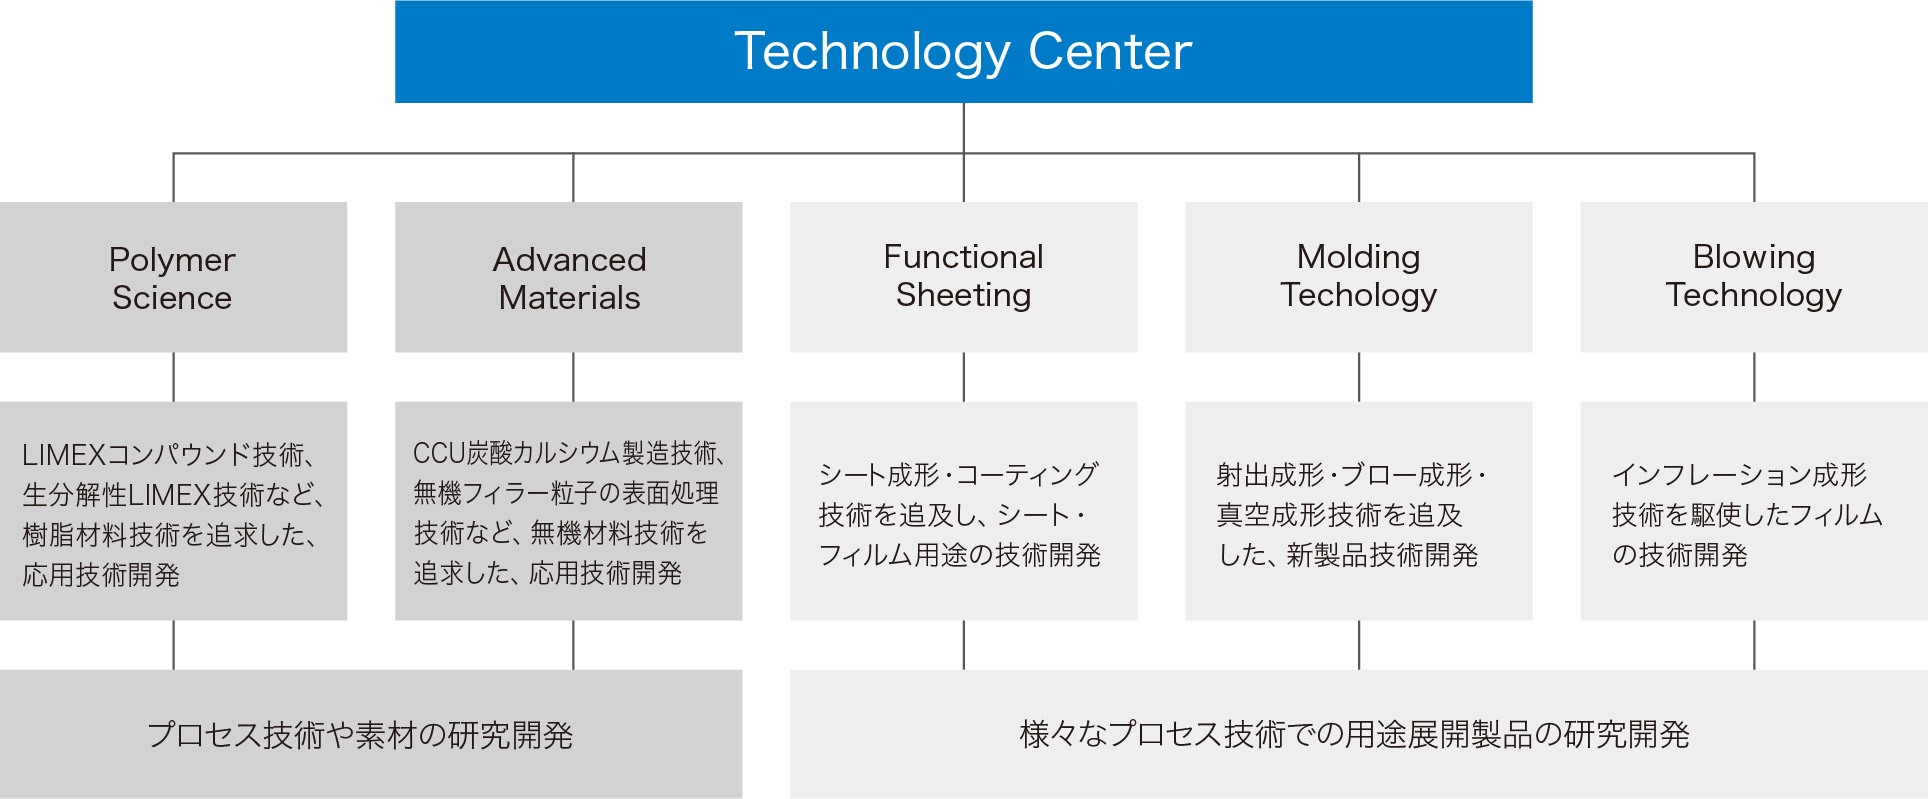 テクノロジーセンターのイメージ